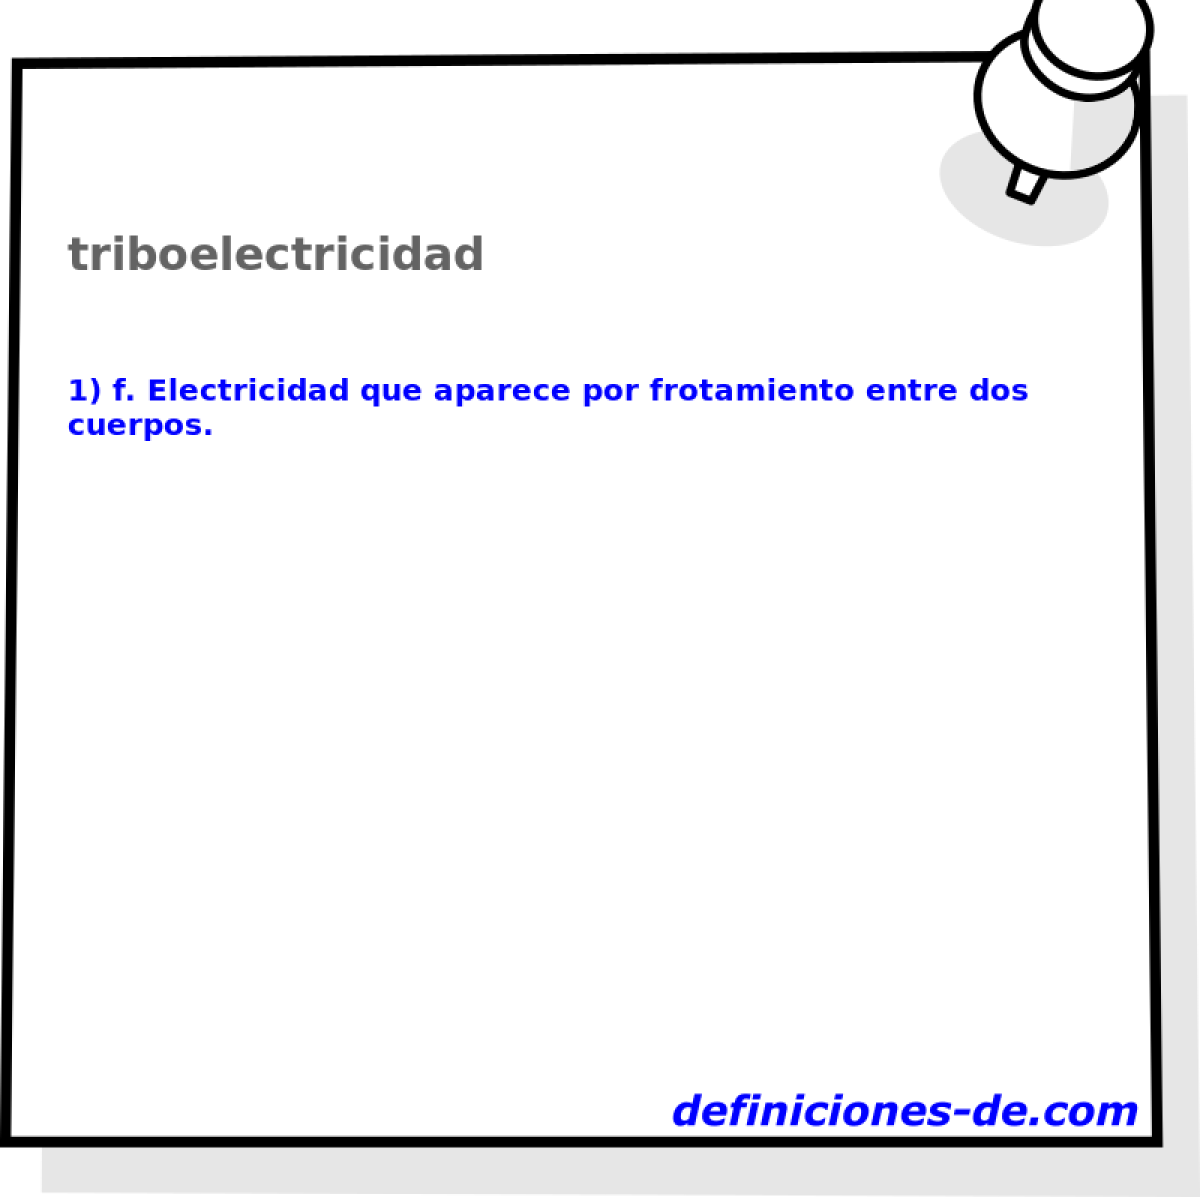 triboelectricidad 